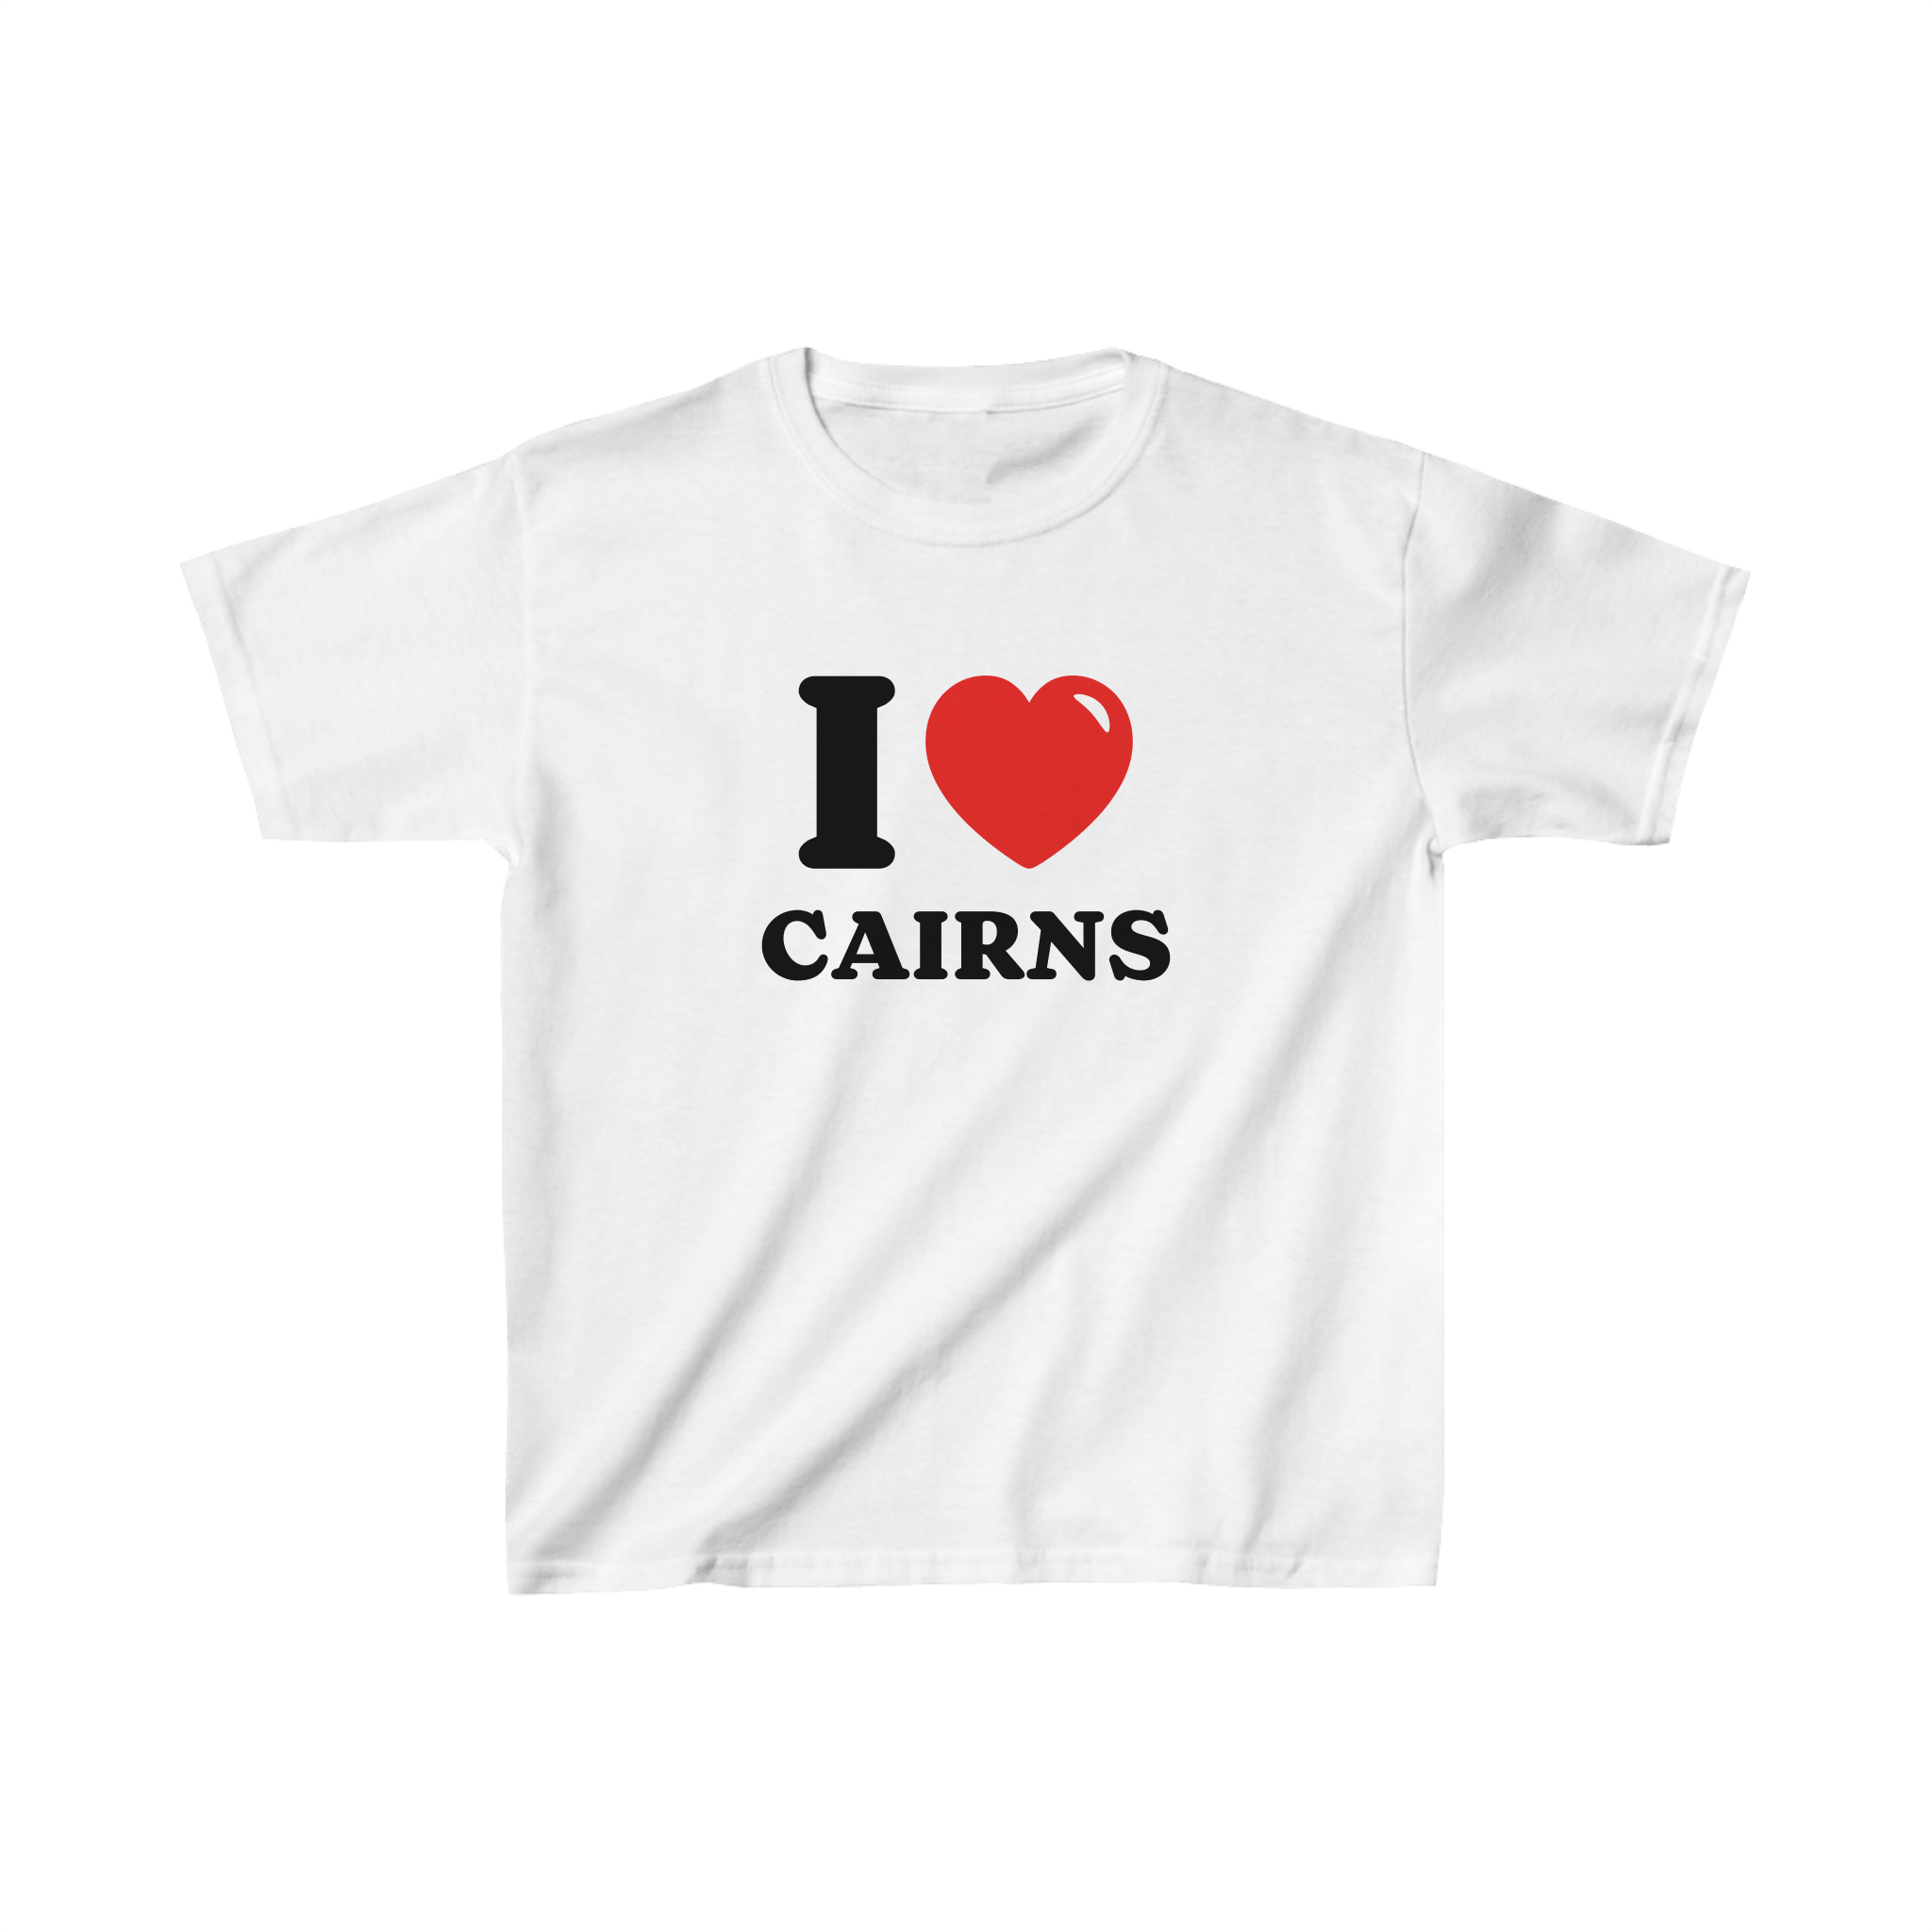 'I love Cairns' baby tee - In Print We Trust